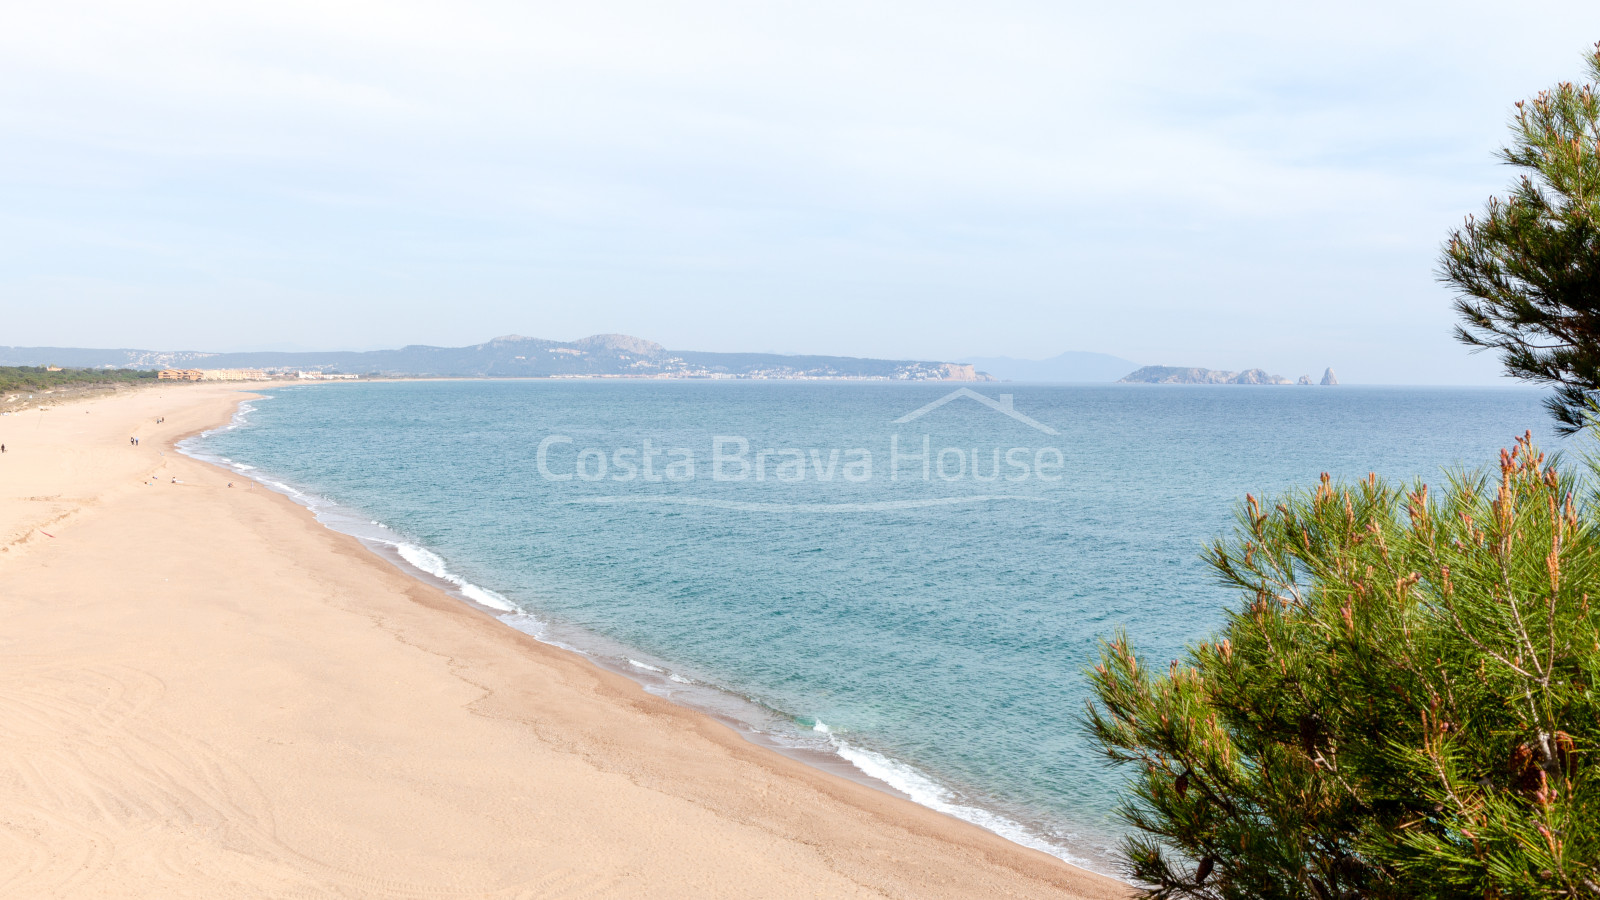 Exclusiva villa de lujo a unos pasos de la playa, entre Begur y Pals, con increíbles vistas al mar